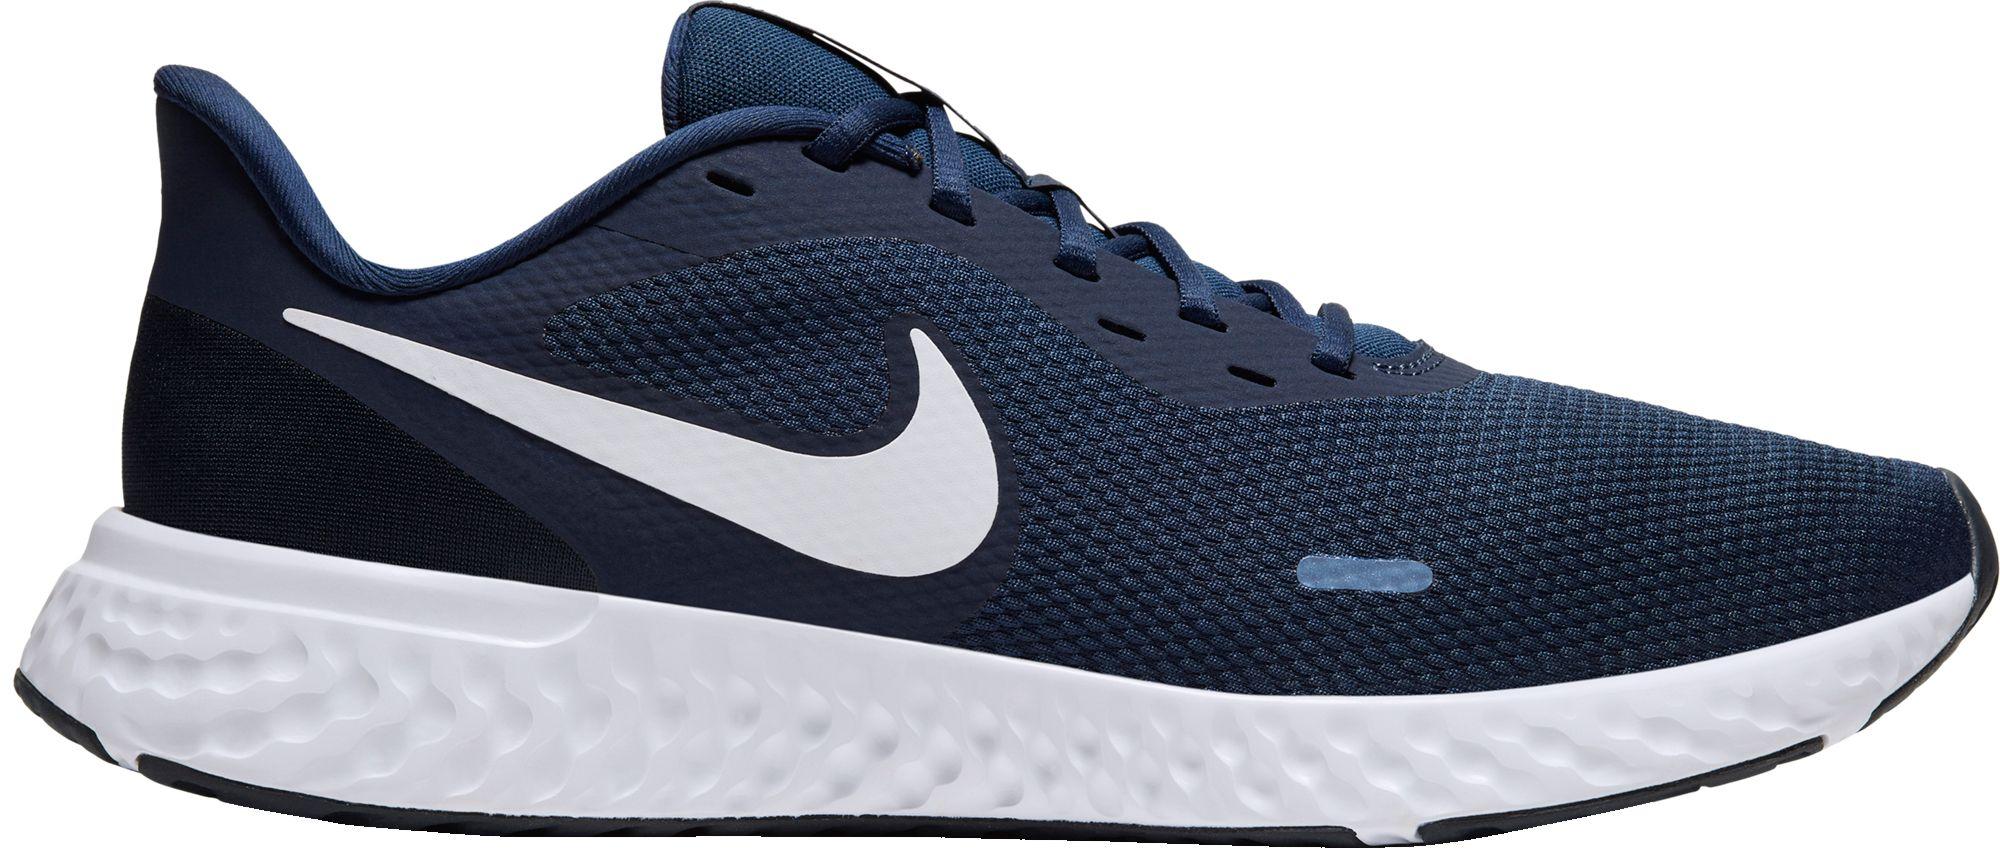 Nike Revolution 5 Running Shoe in Navy/White (Blue) for Men - Lyst